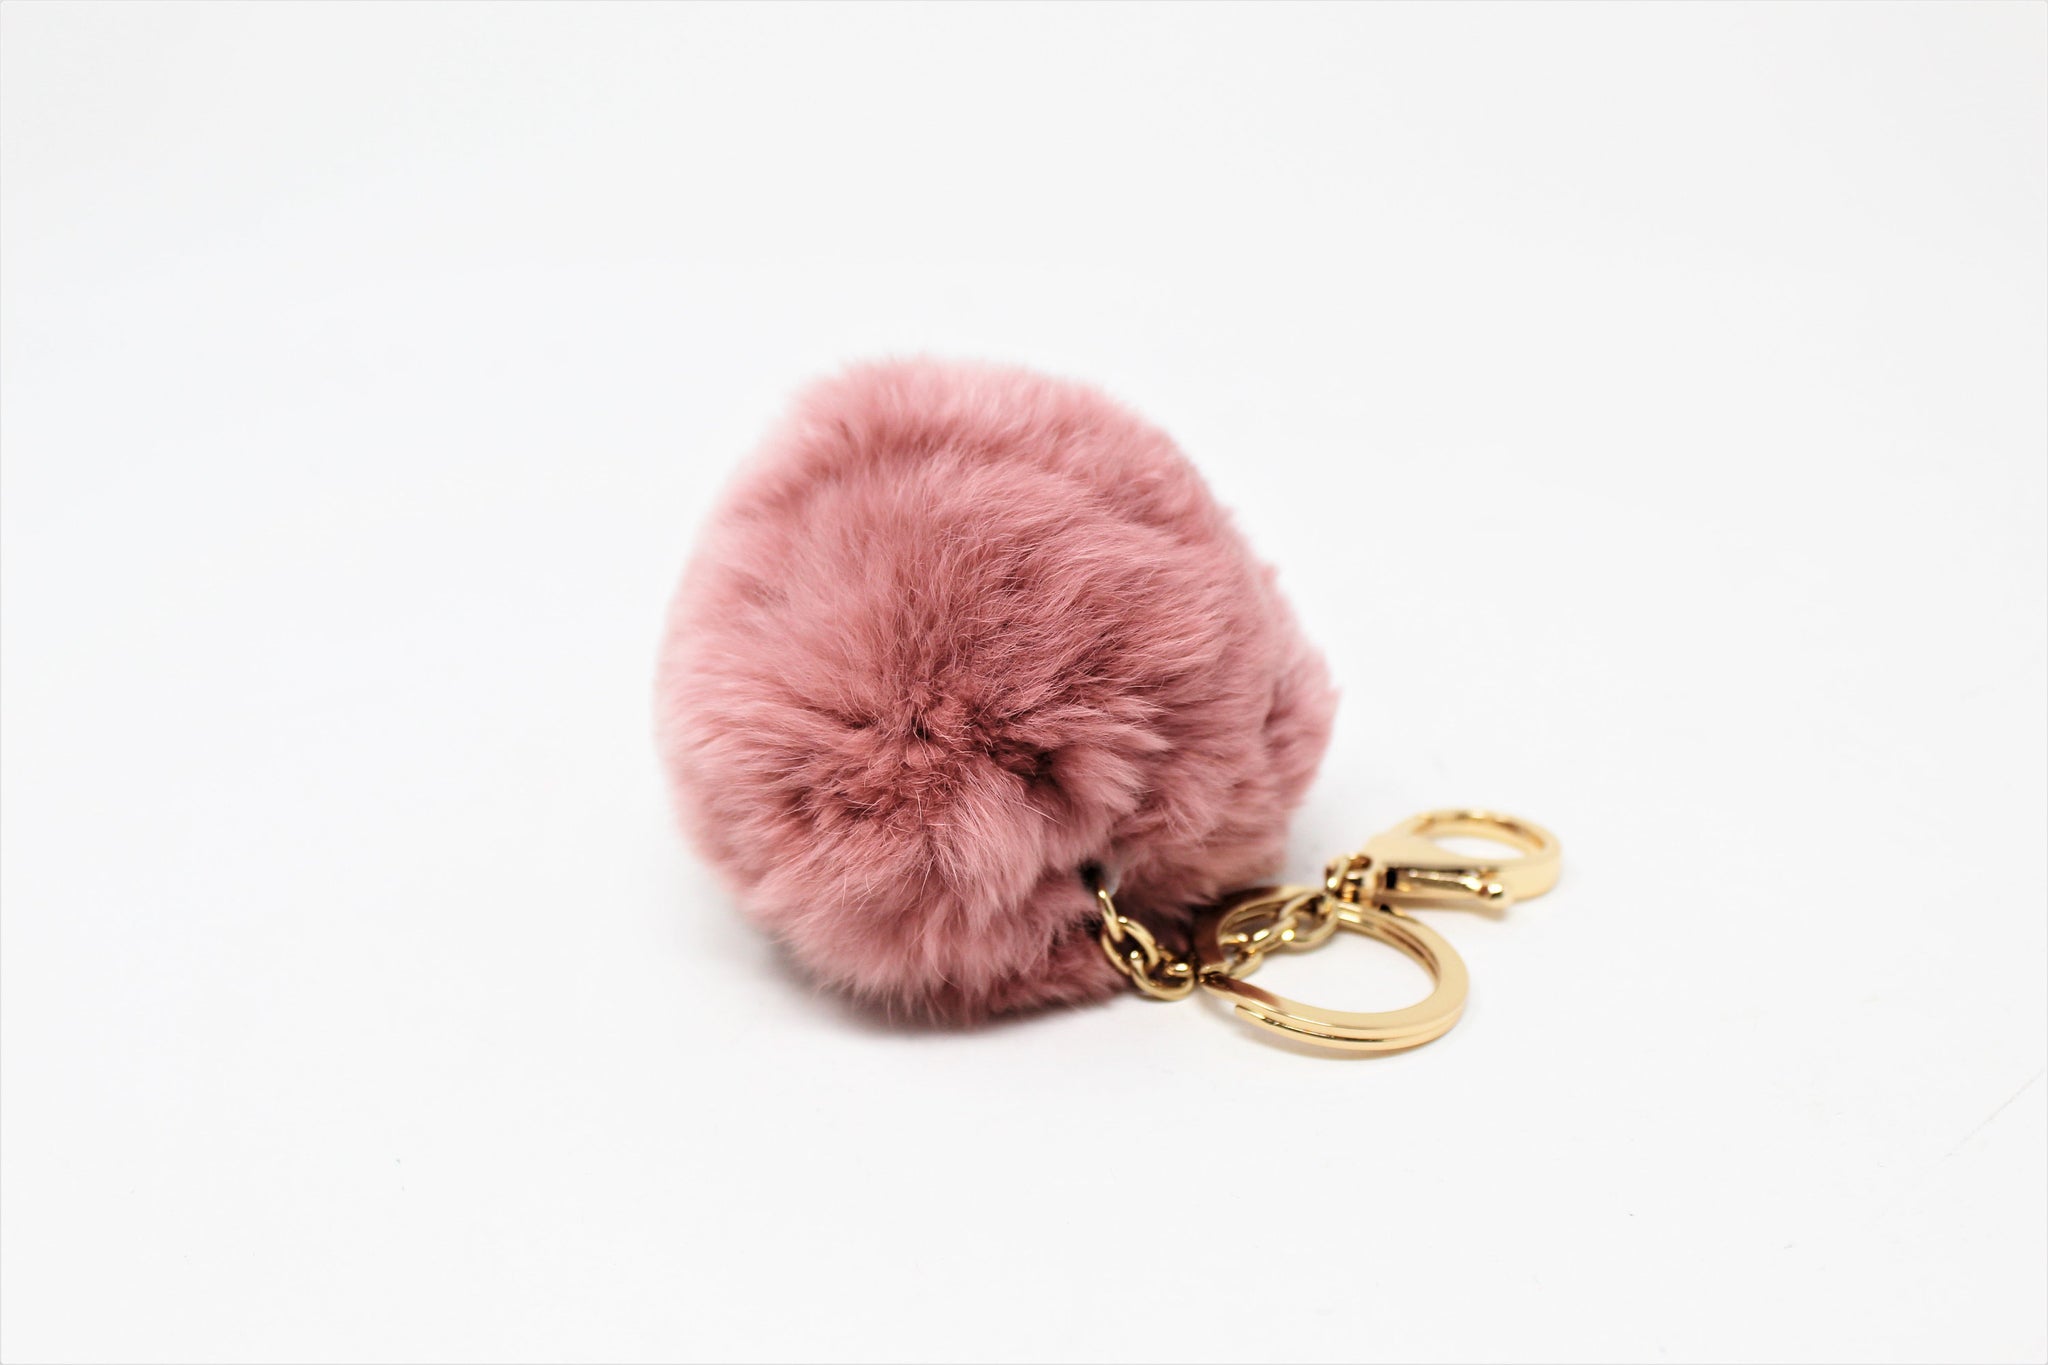 Fluffy Fur Pom Pom Keychain